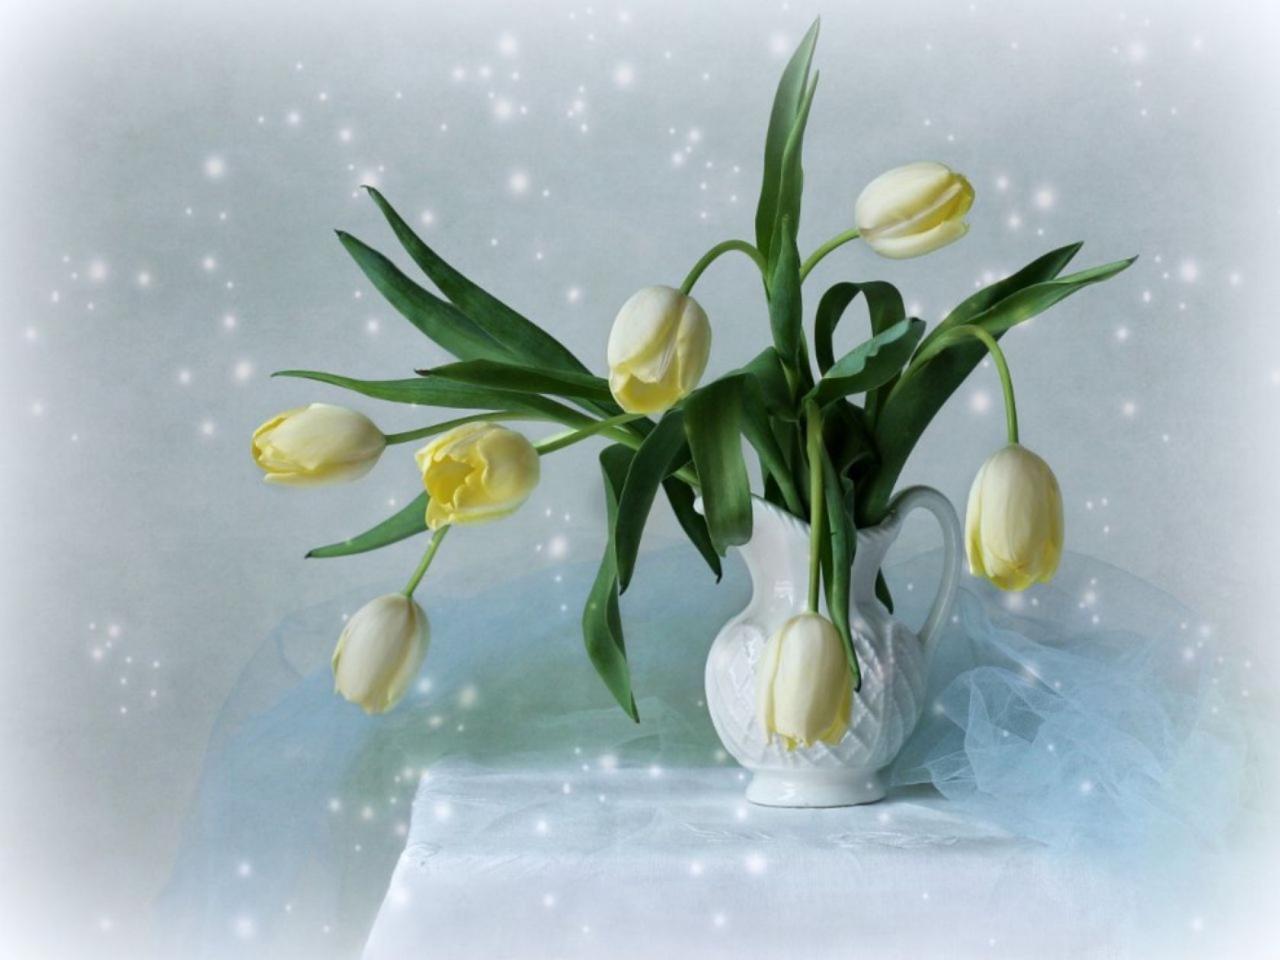 Обои для рабочего стола Нежно-жёлтые тюльпаны в белой вазе фото - Раздел  обоев: Цветы